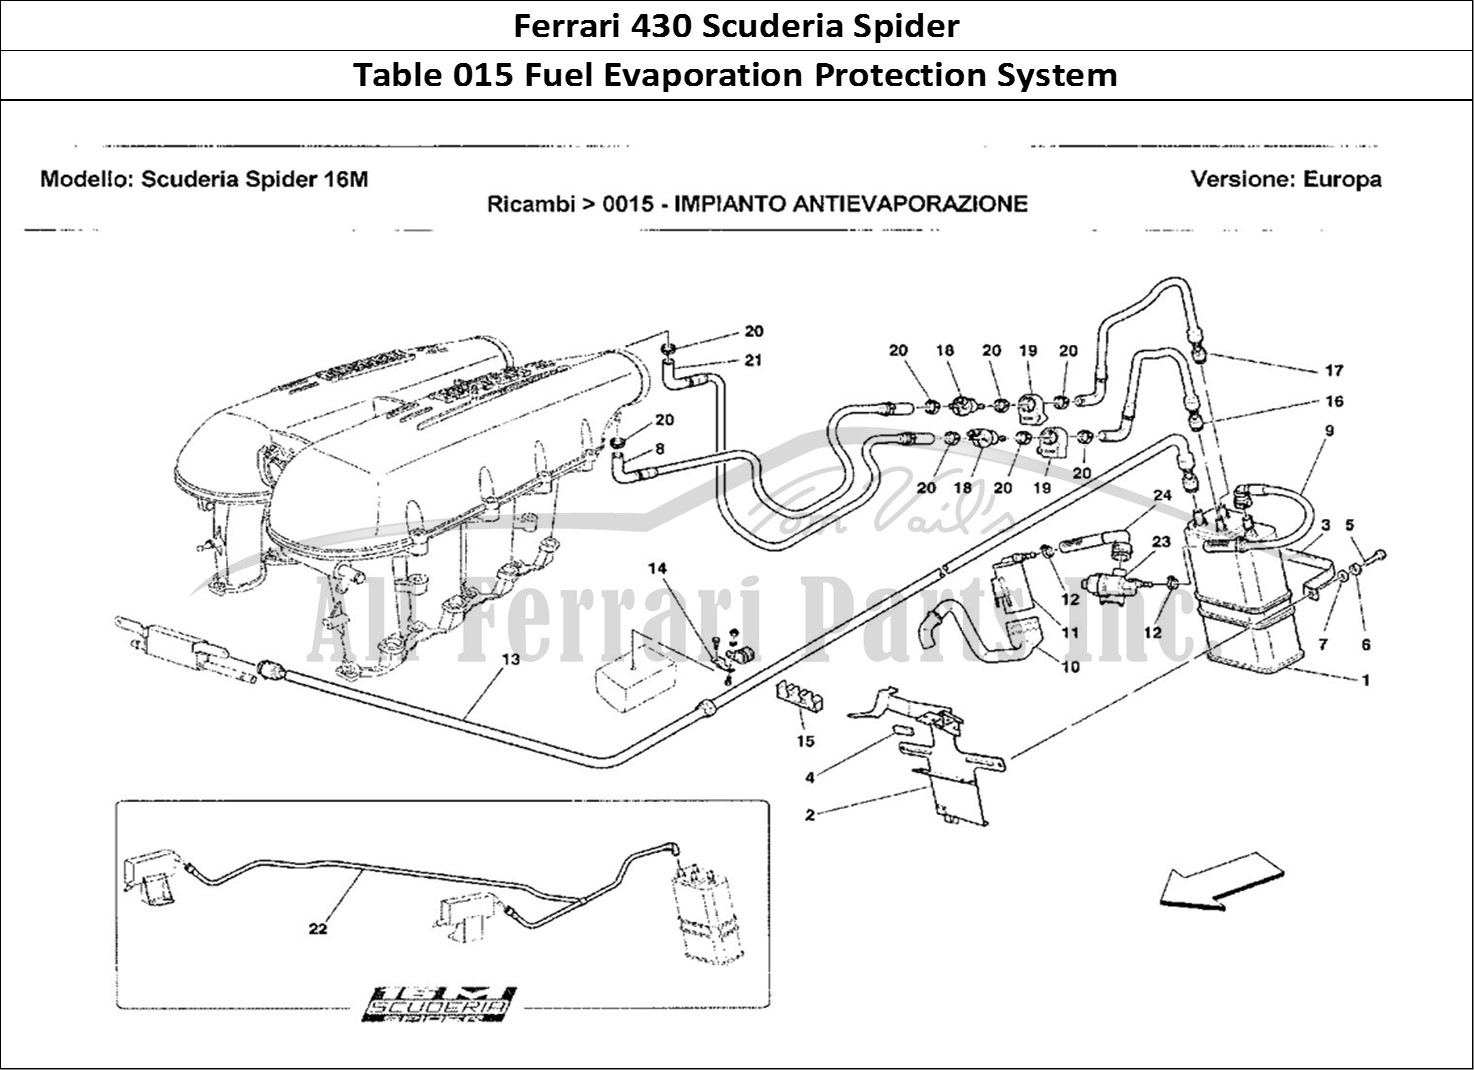 Ferrari Parts Ferrari 430 Scuderia Spider 16M Page 015 Impianto Antievaporazione